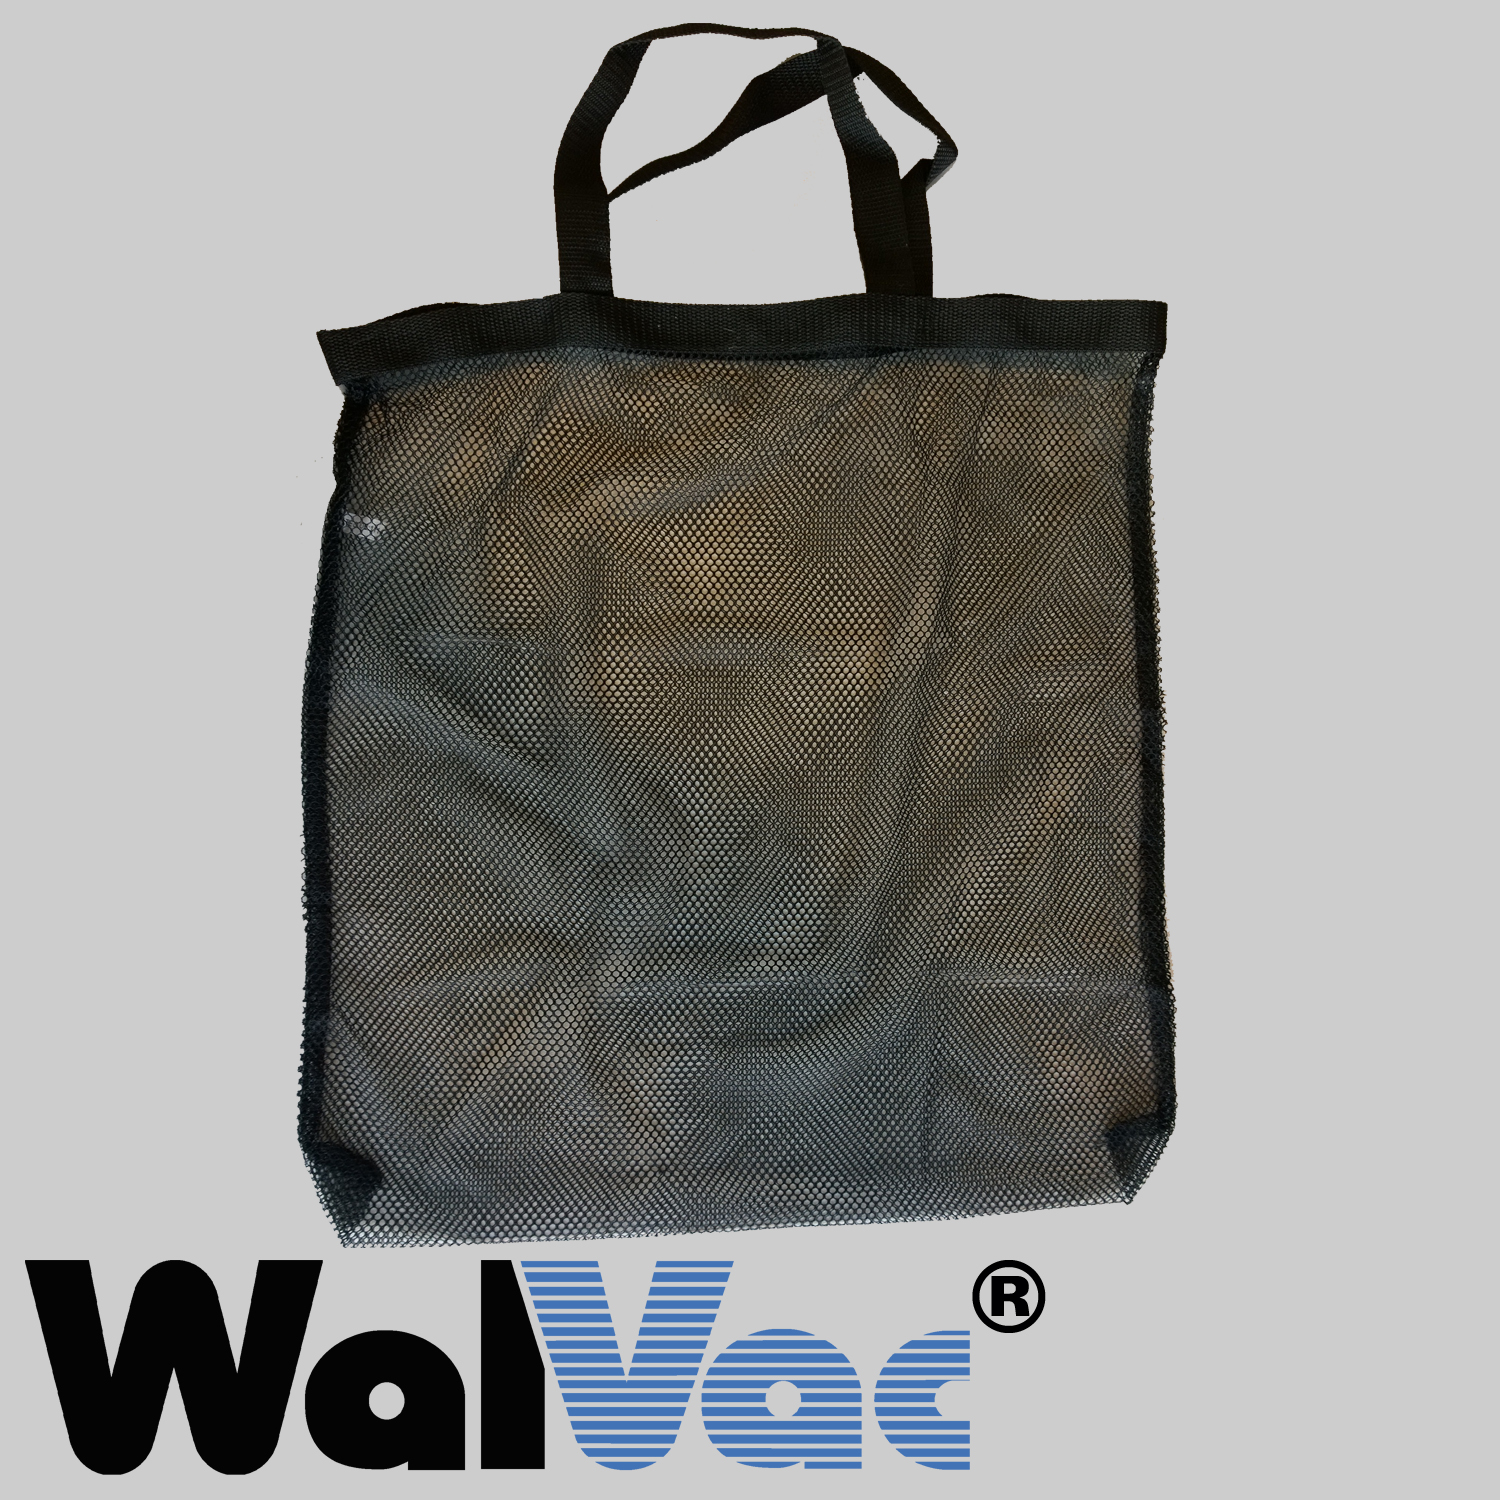 57162 -WalVac Vacuum Bag WalVac 10 Gallon Central/Build-in Vacuum Bags 6 Bags 